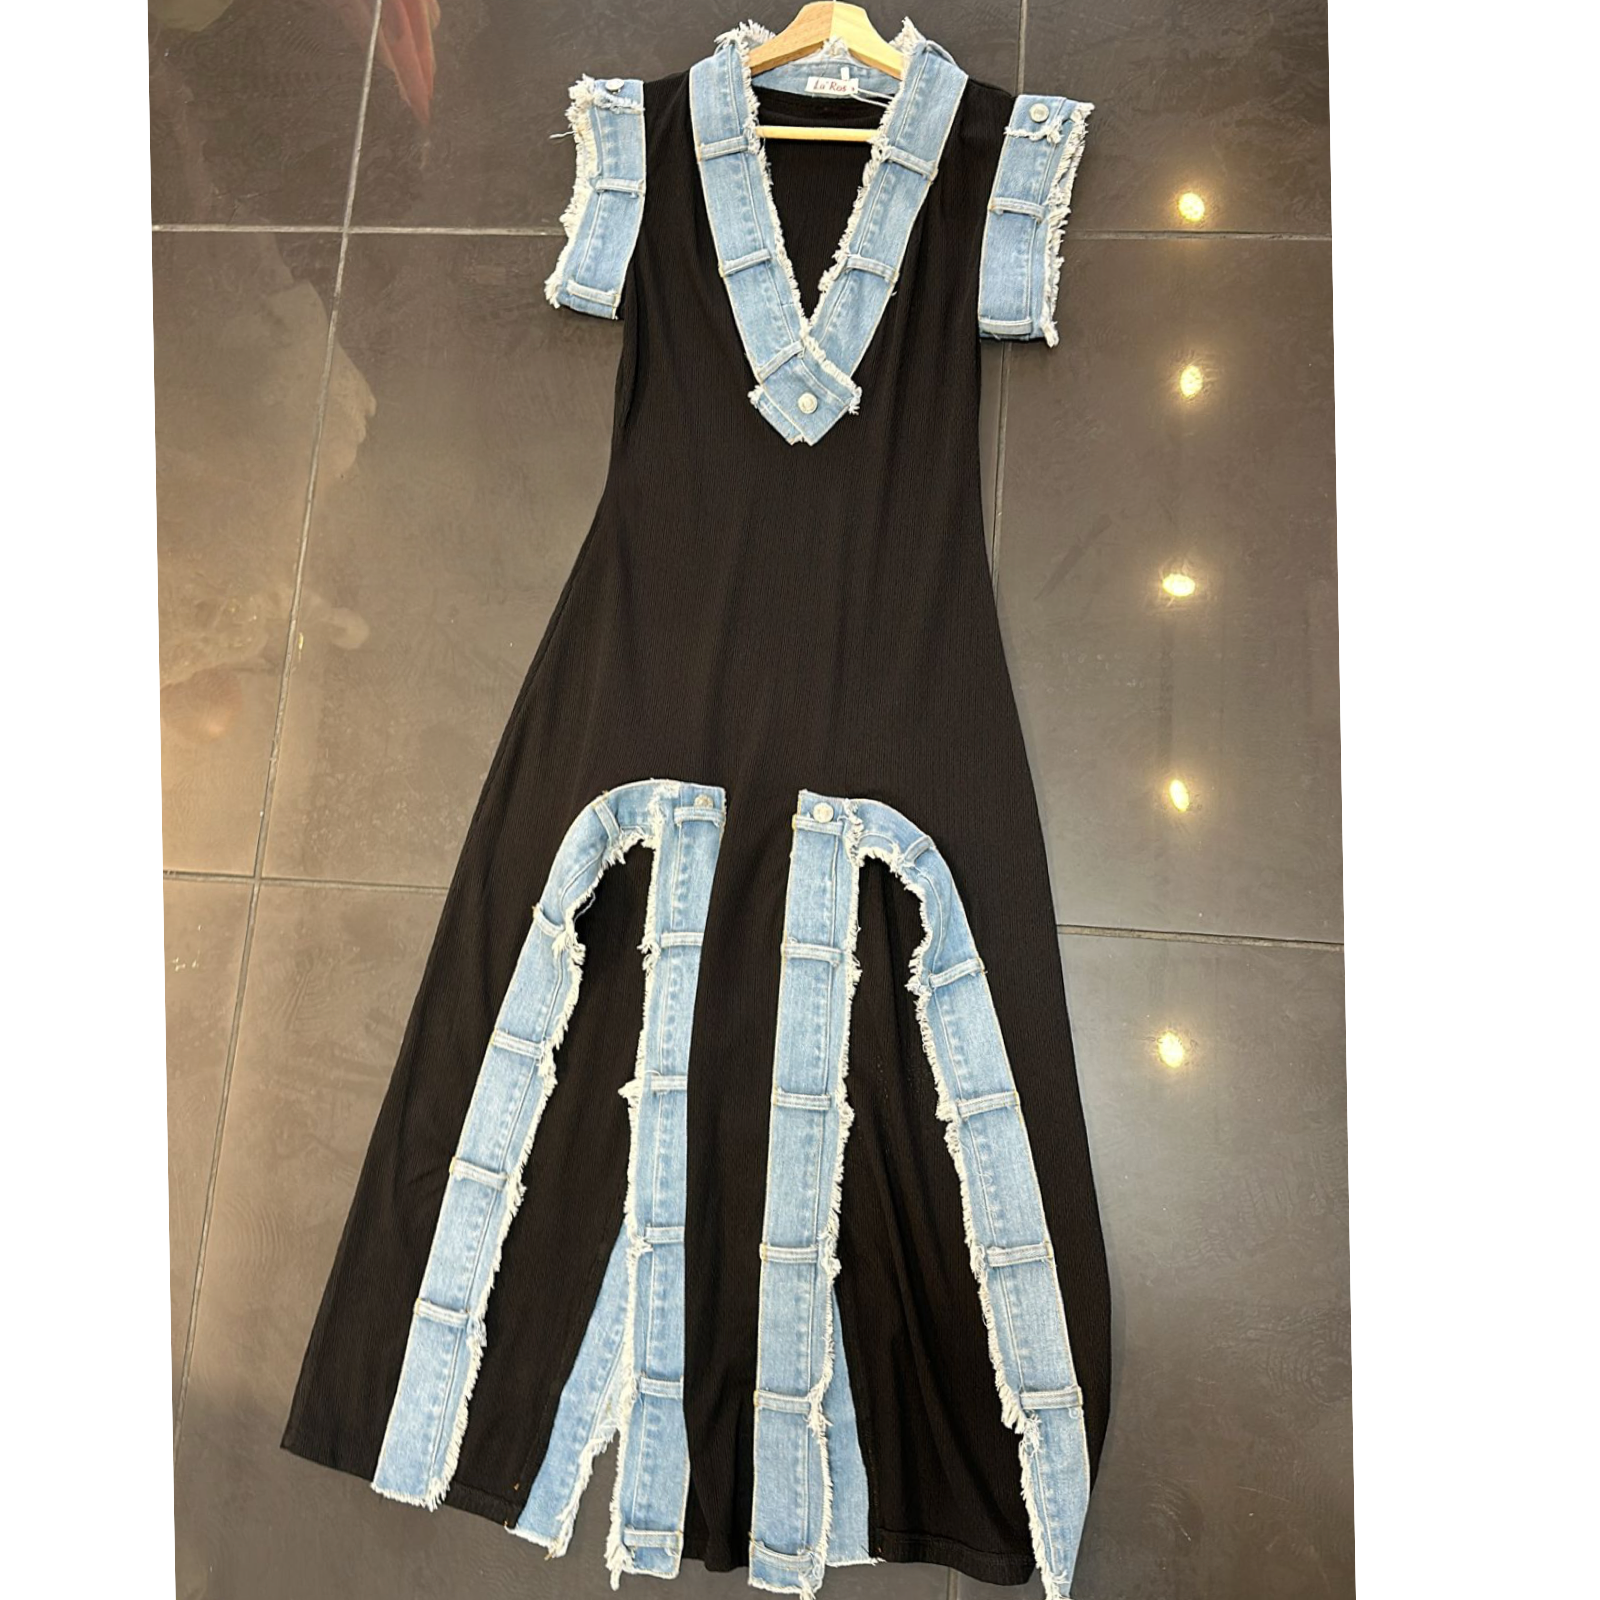 Sara black/blue denim dress